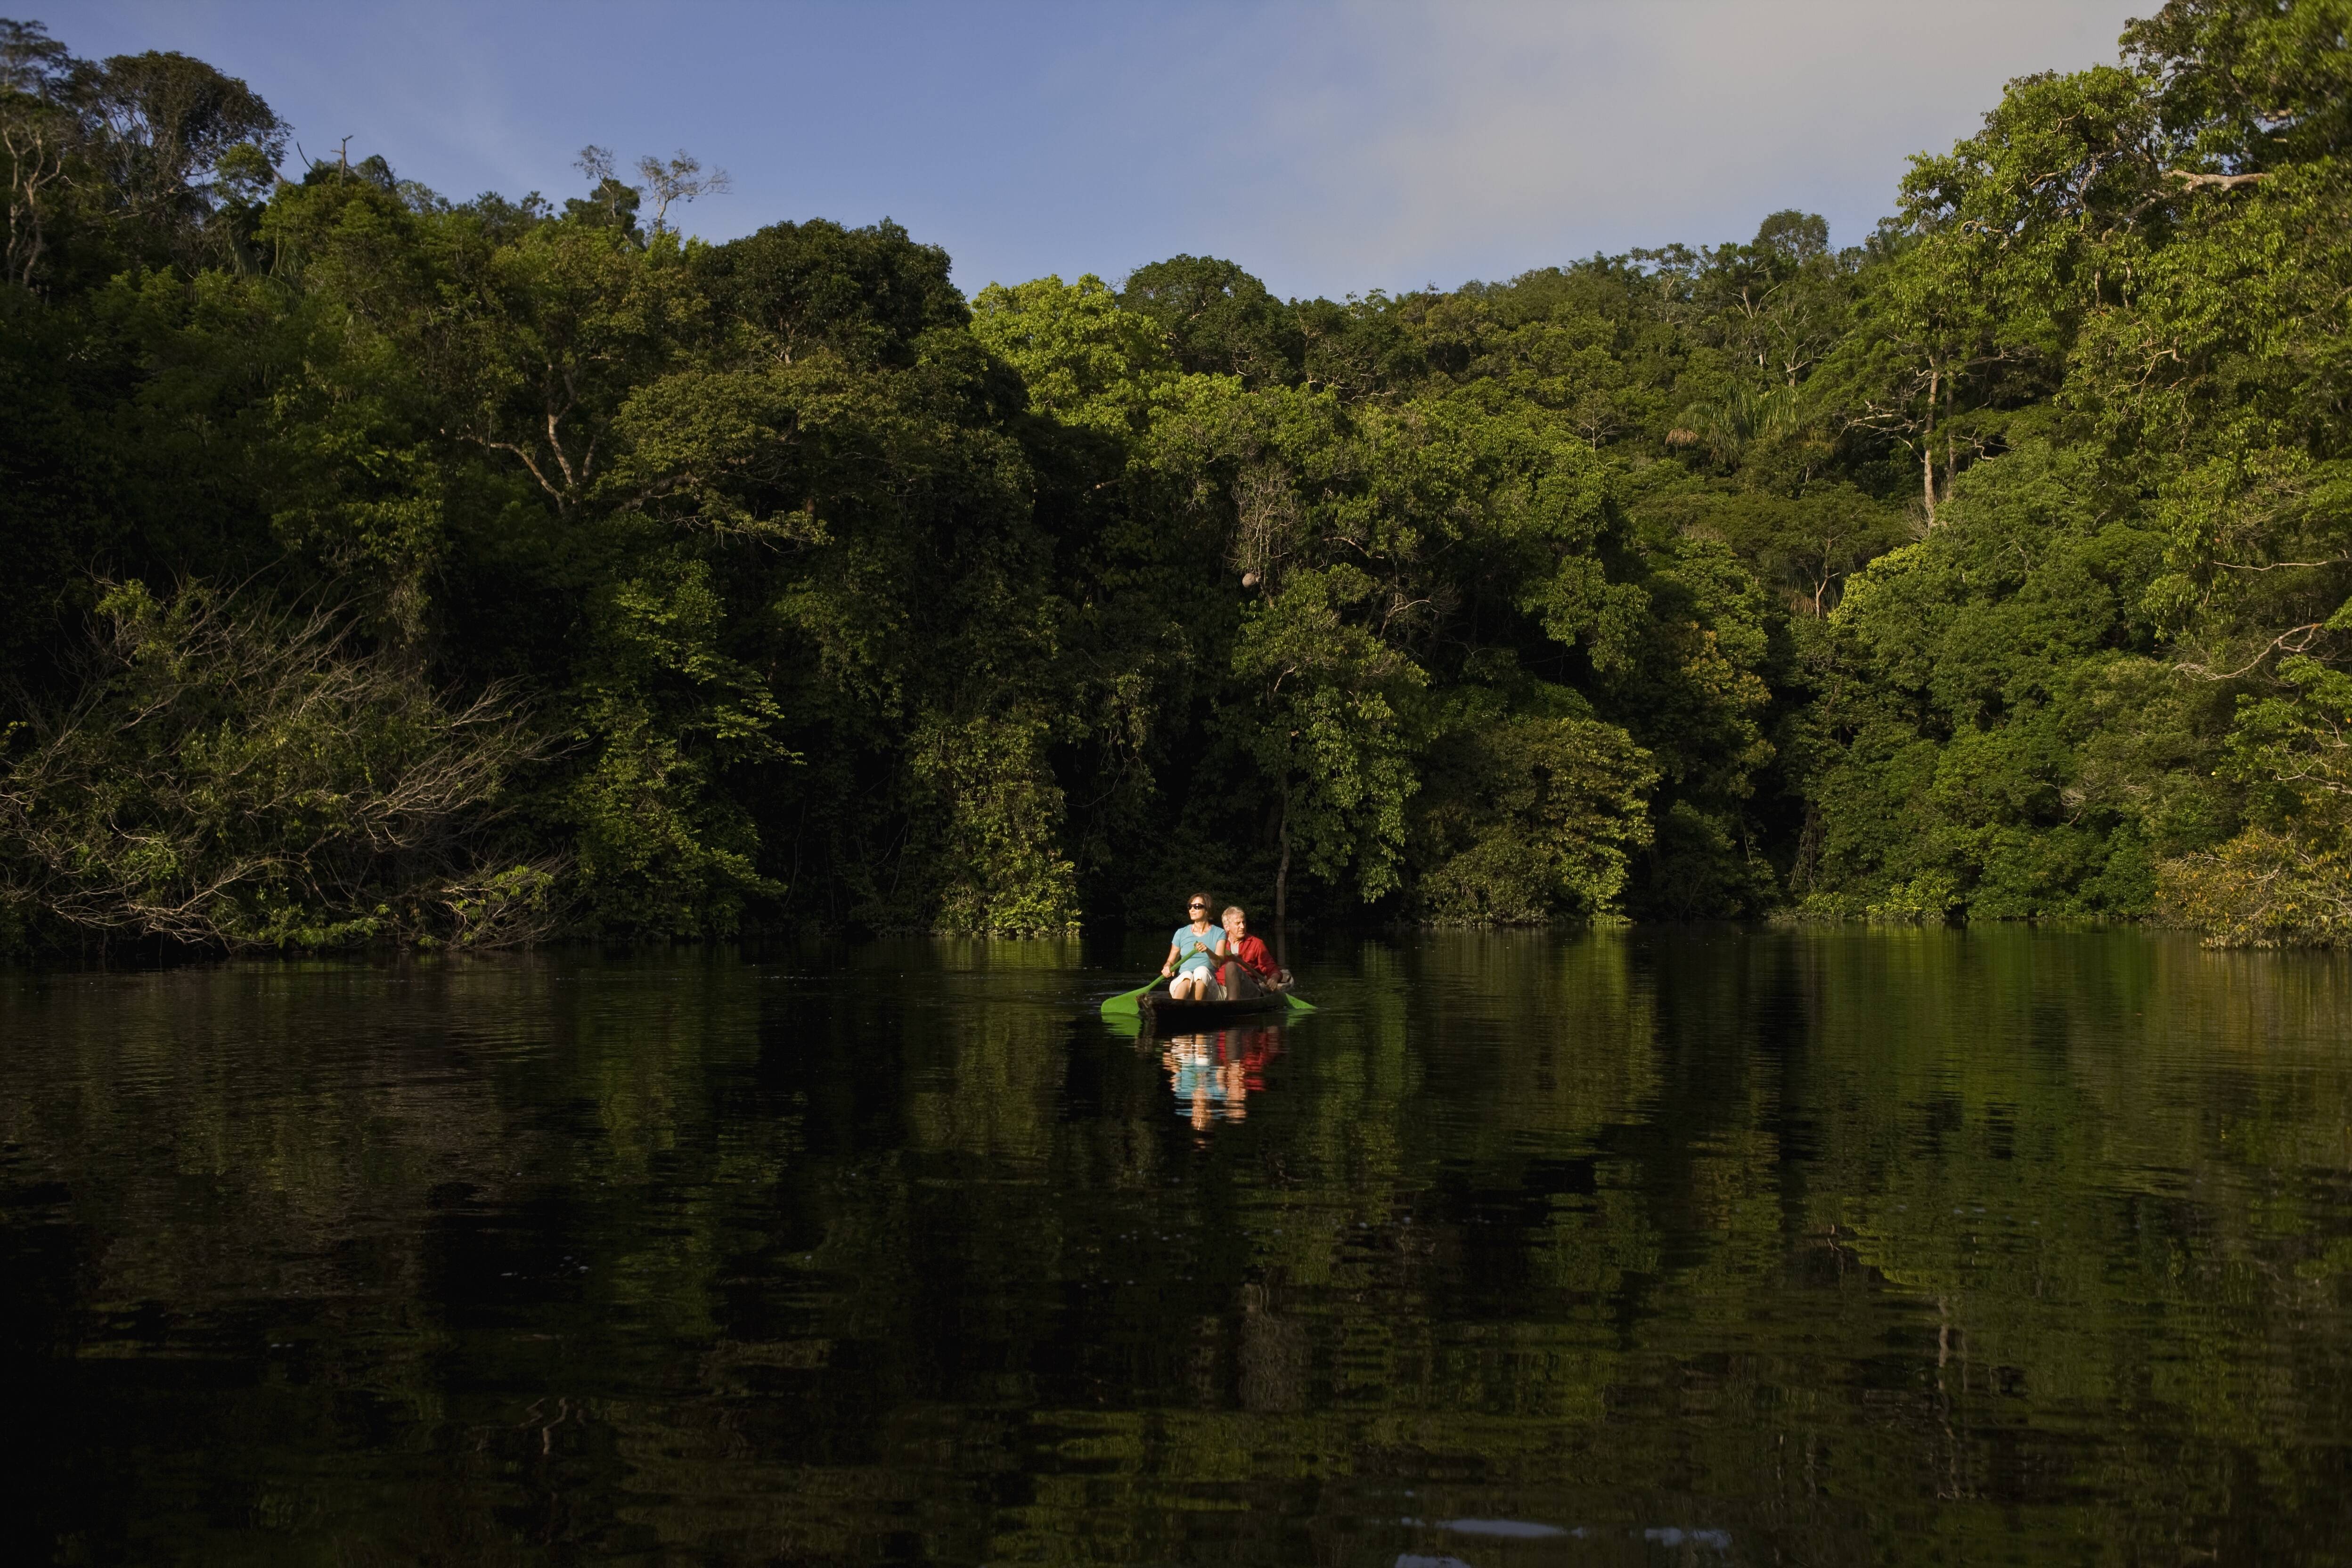 Passear de barco ou canoa pelos igarapés do rio Amazonas é uma das atividades possíveis Getty Images